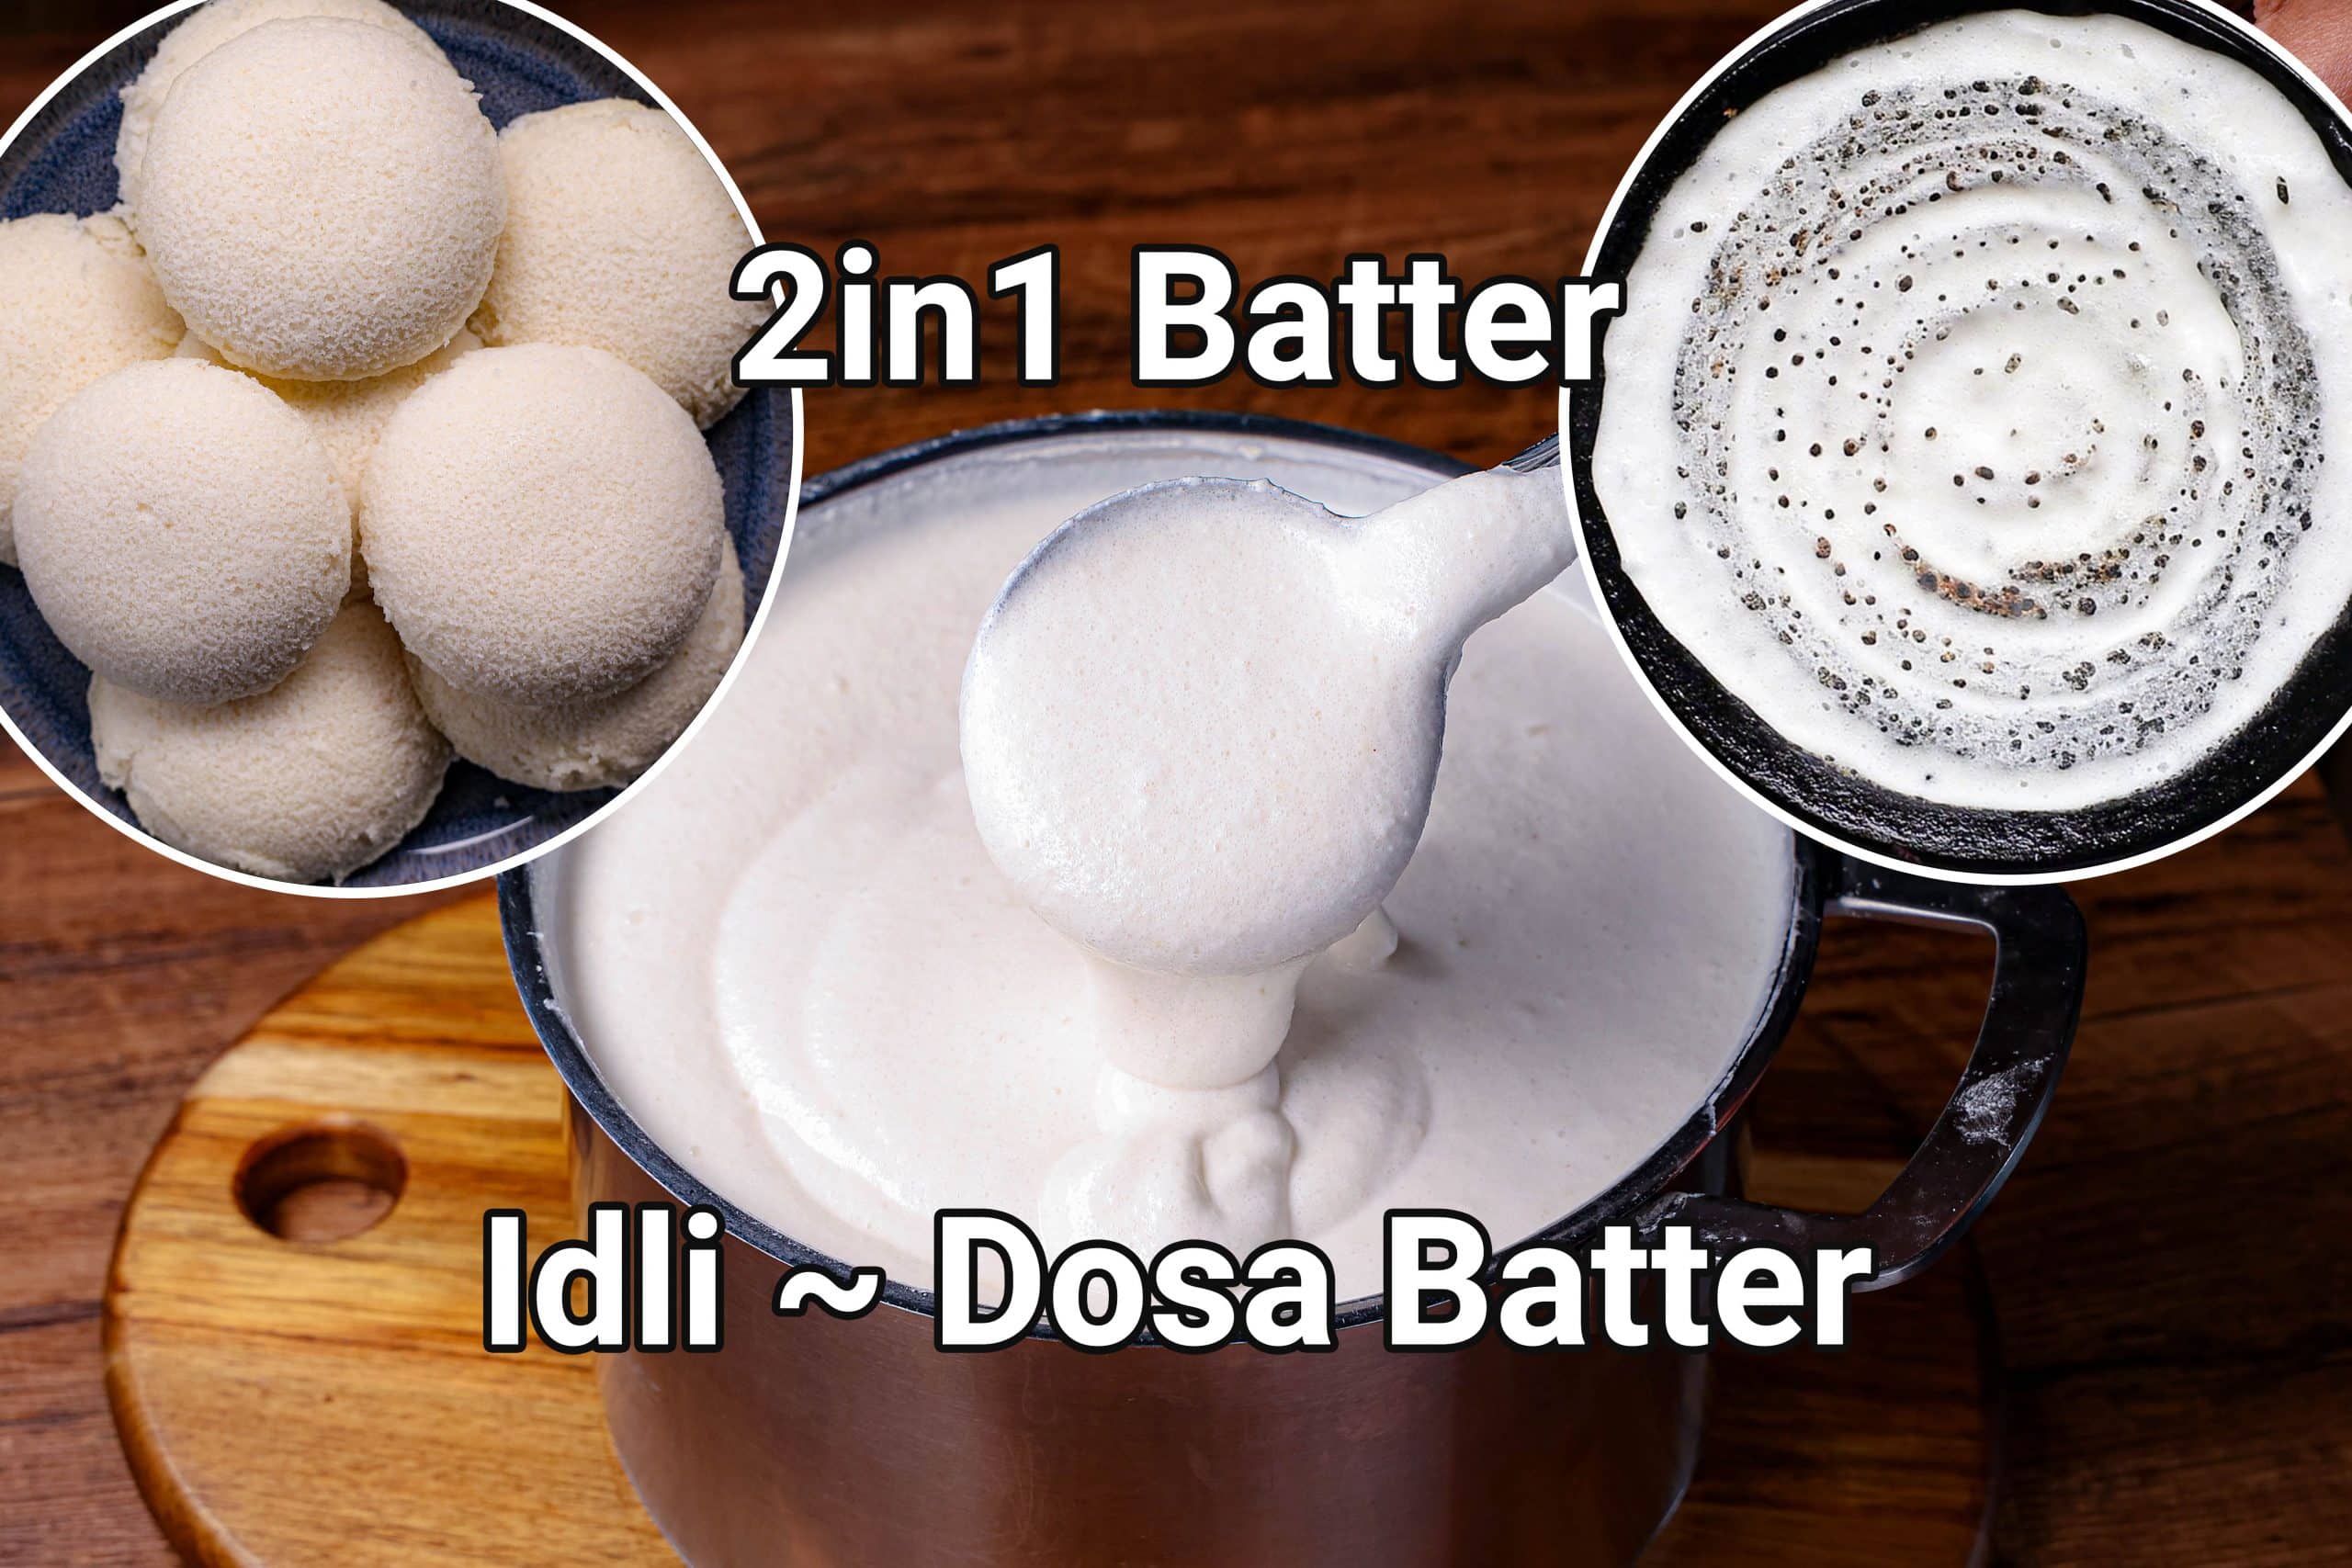 Idli Dosa Batter Recipe | 2 in 1 Multipurpose Batter For Morning Breakfast